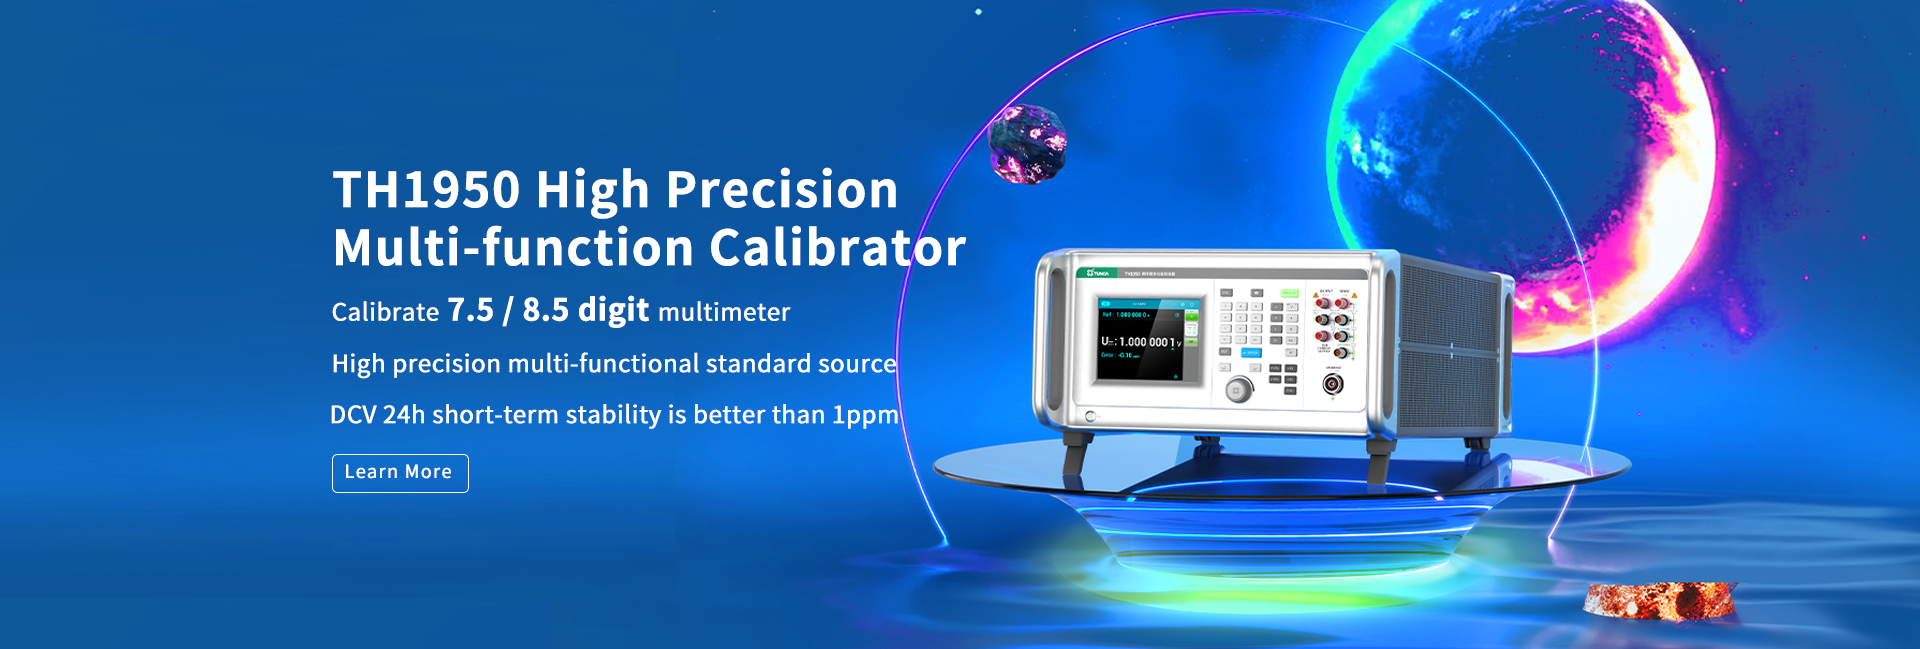 TH1950 high precision multi-function calibrator tunkia